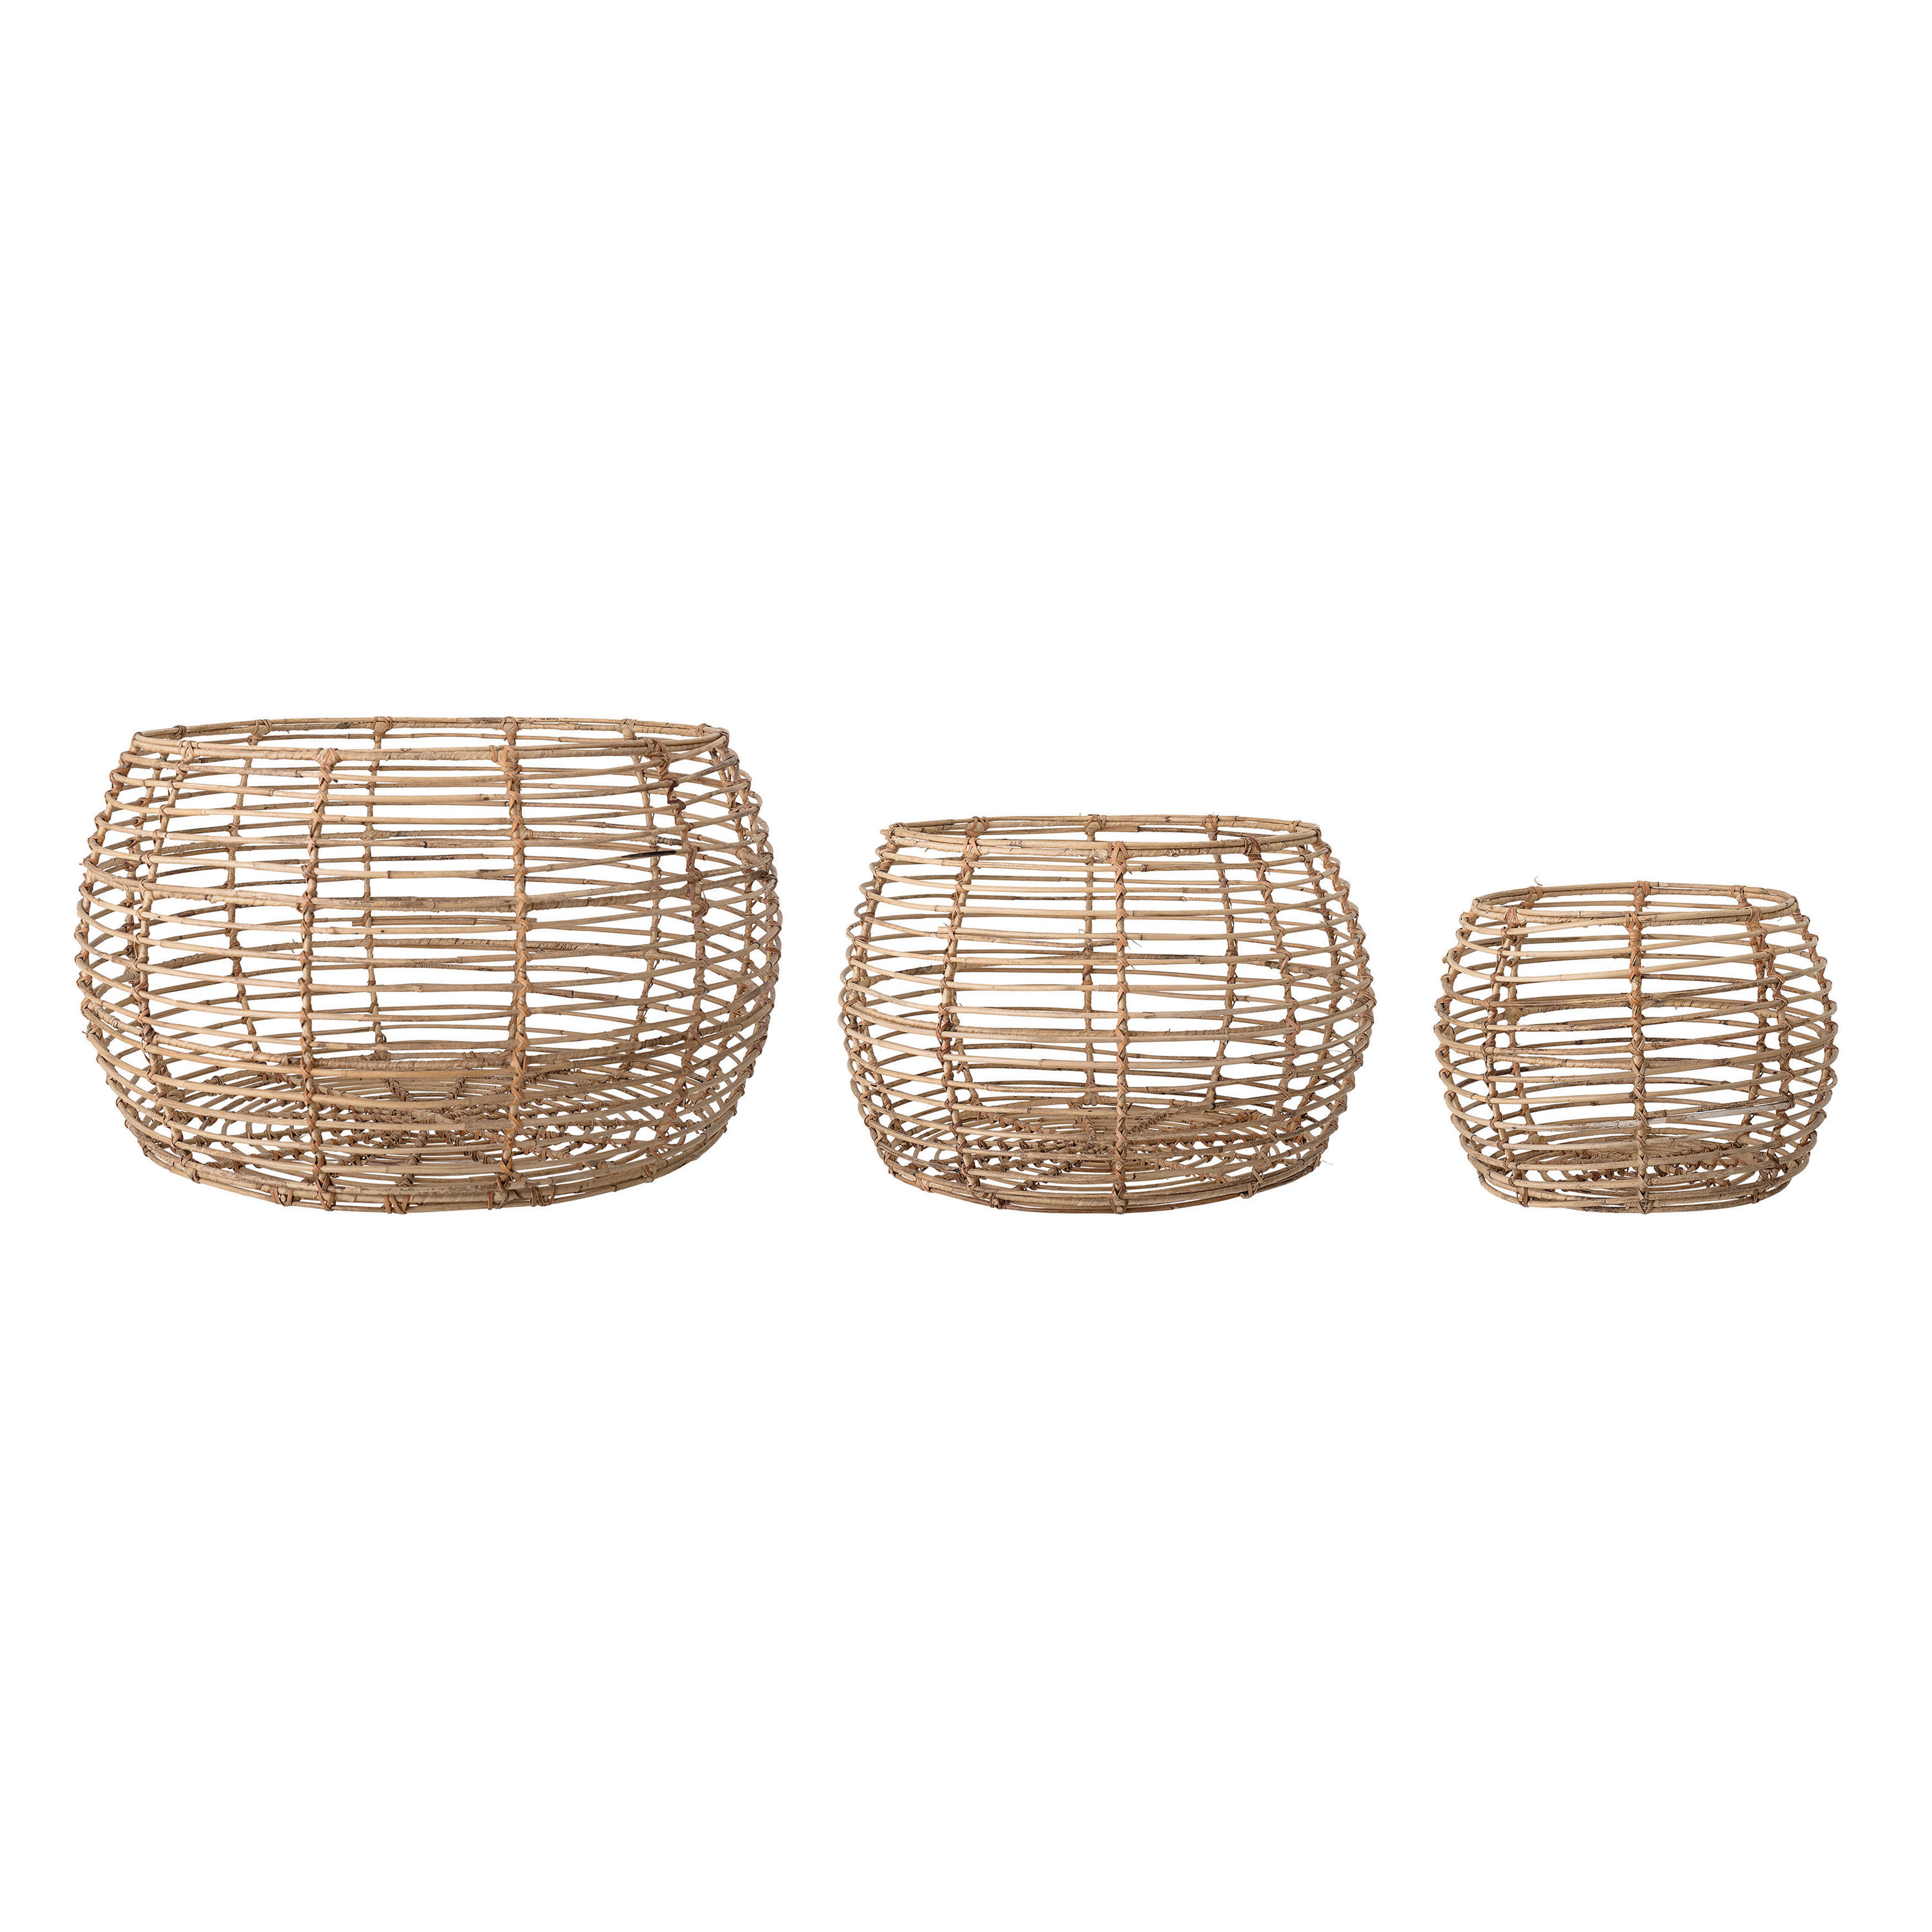 Beige Open Weave Rattan Baskets (Set of 3 Sizes) - Moss & Wilder